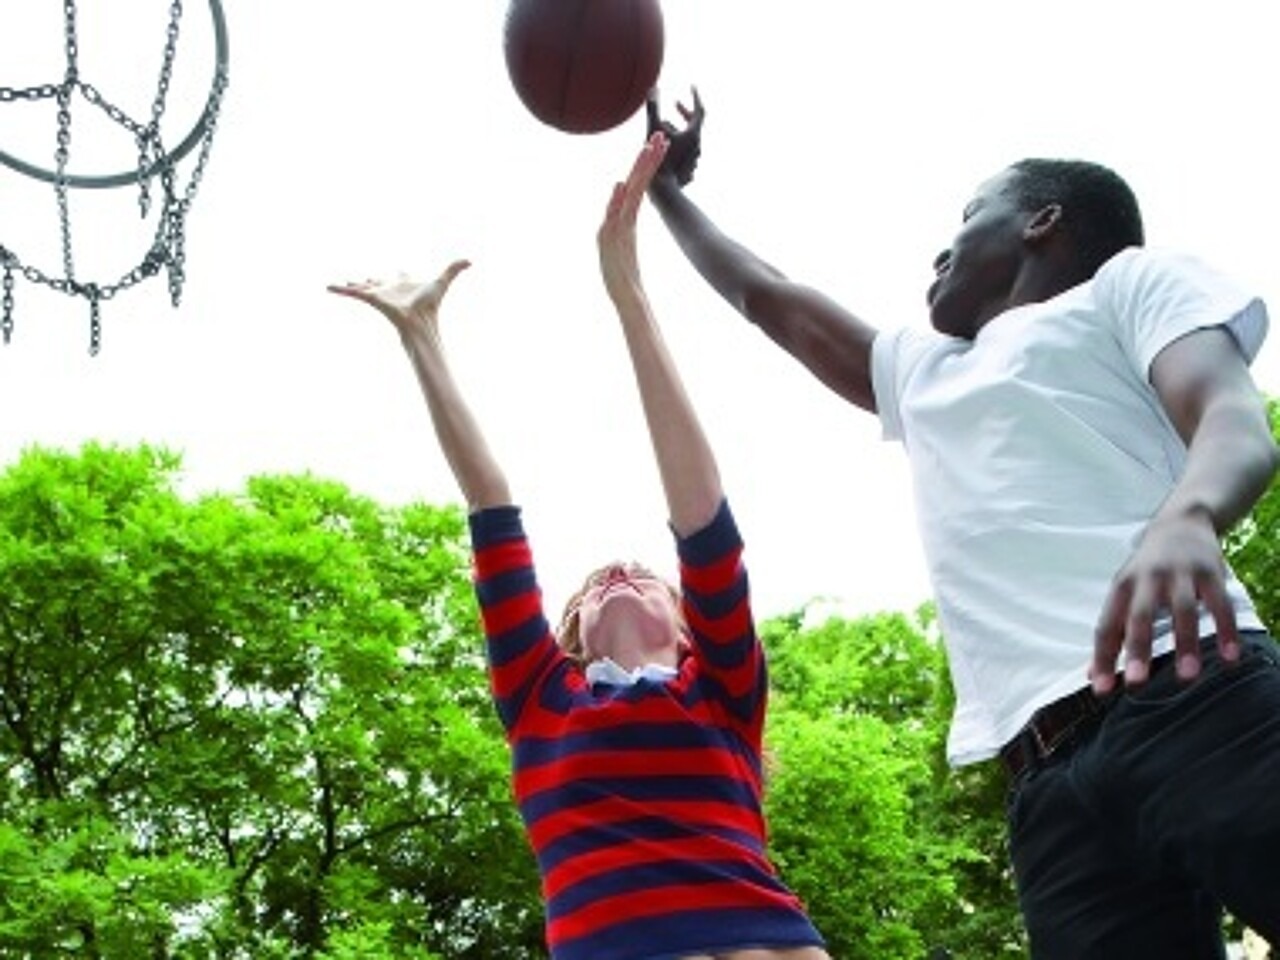 zwei Basketball spielende Jugendliche